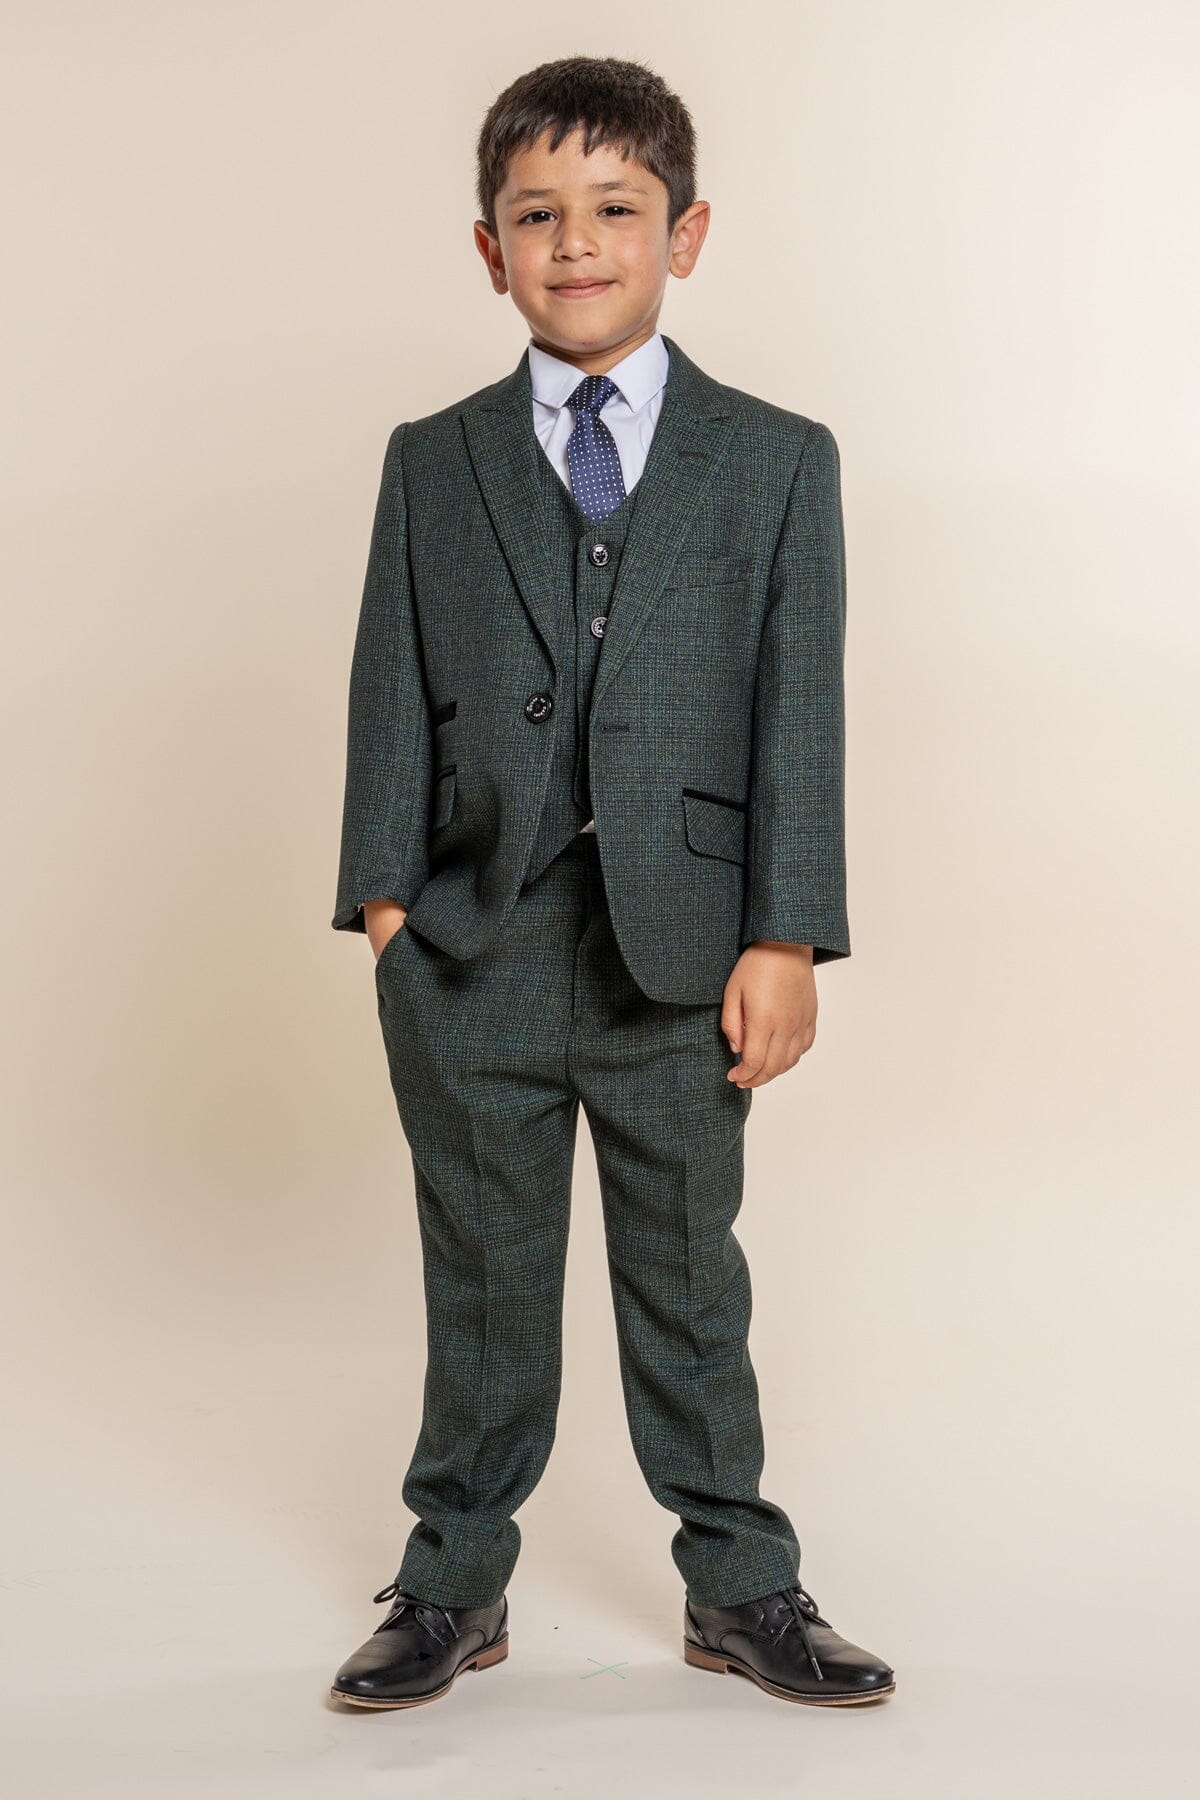 Caridi Olive Boys 3 Piece Suit - Childrenswear - 1 